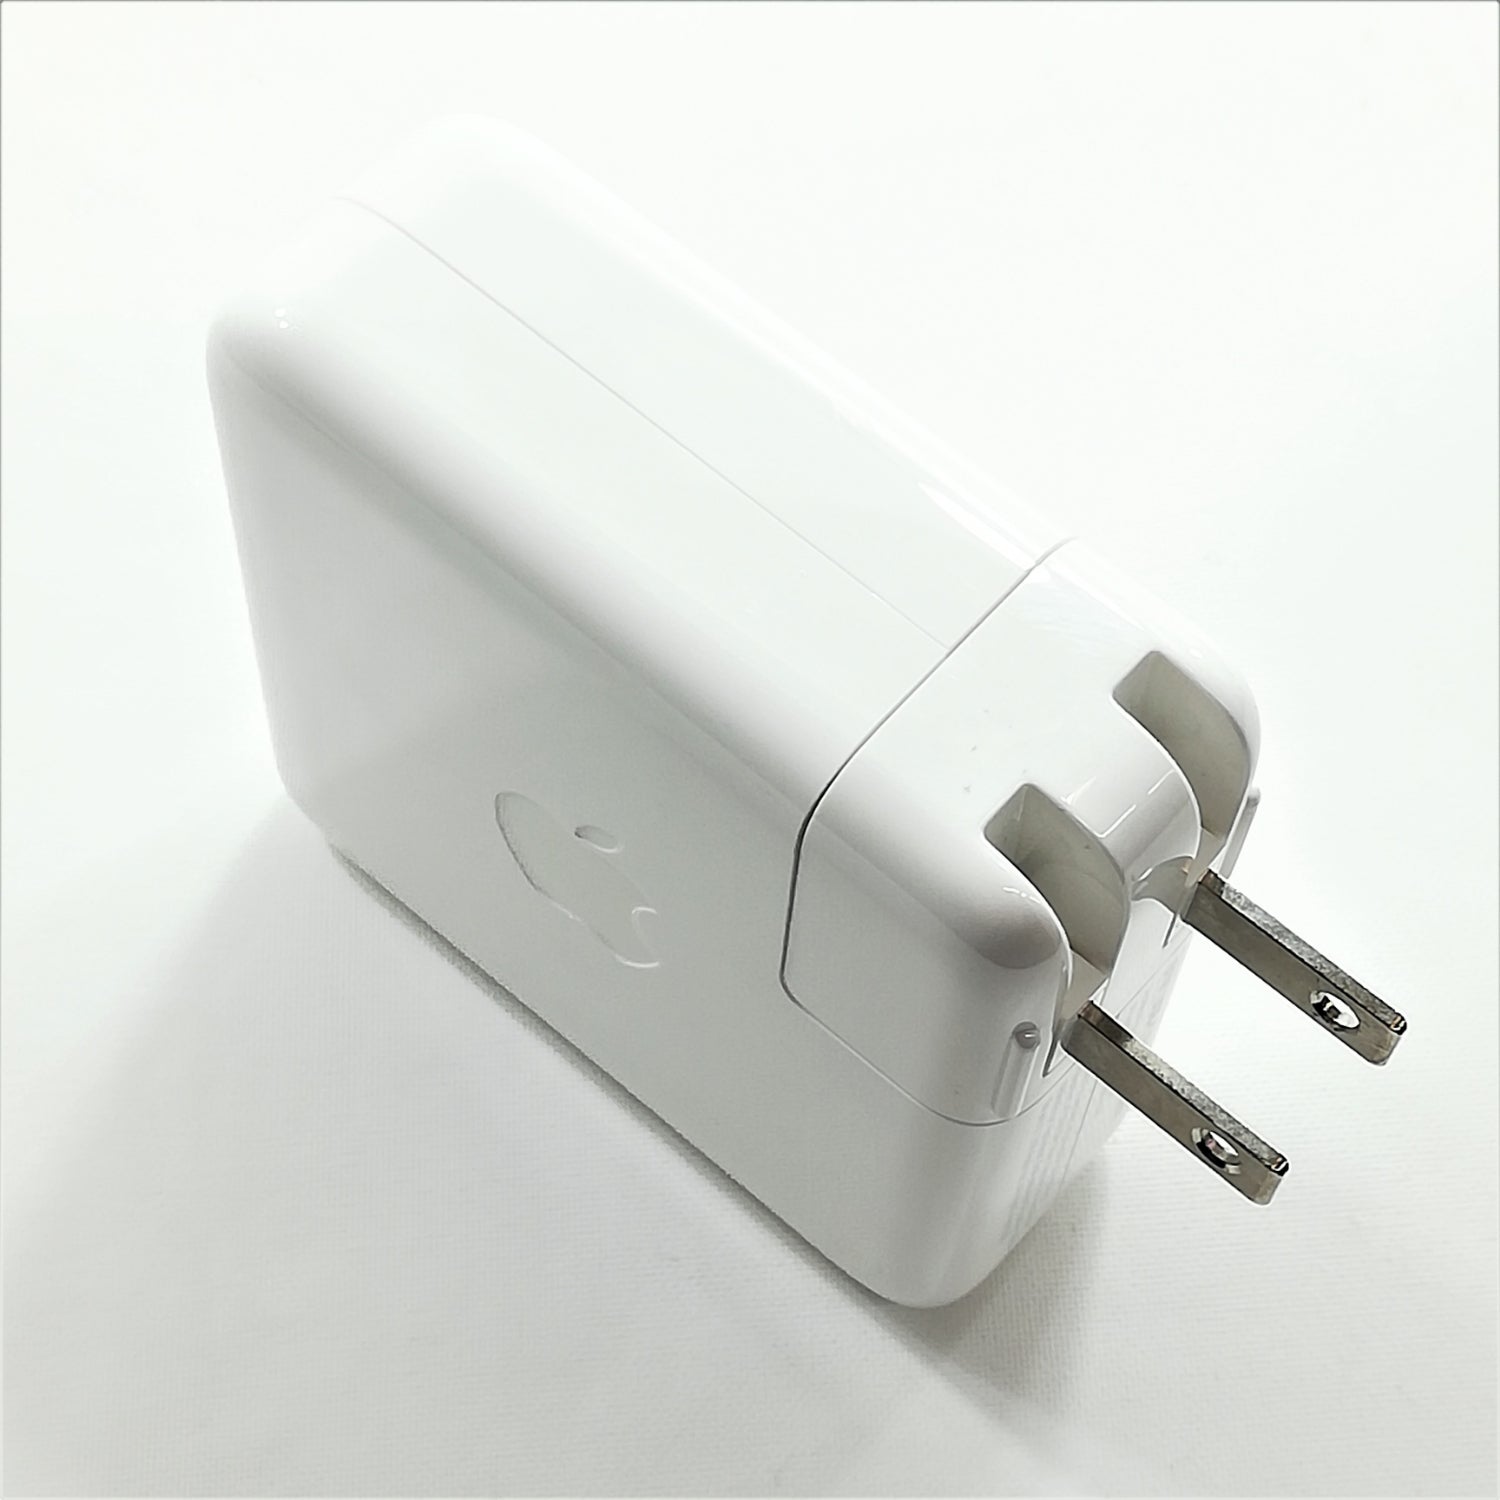 中古品】Apple 61W USB-C電源アダプタ [A_MRW22LL/A] – 秋葉館